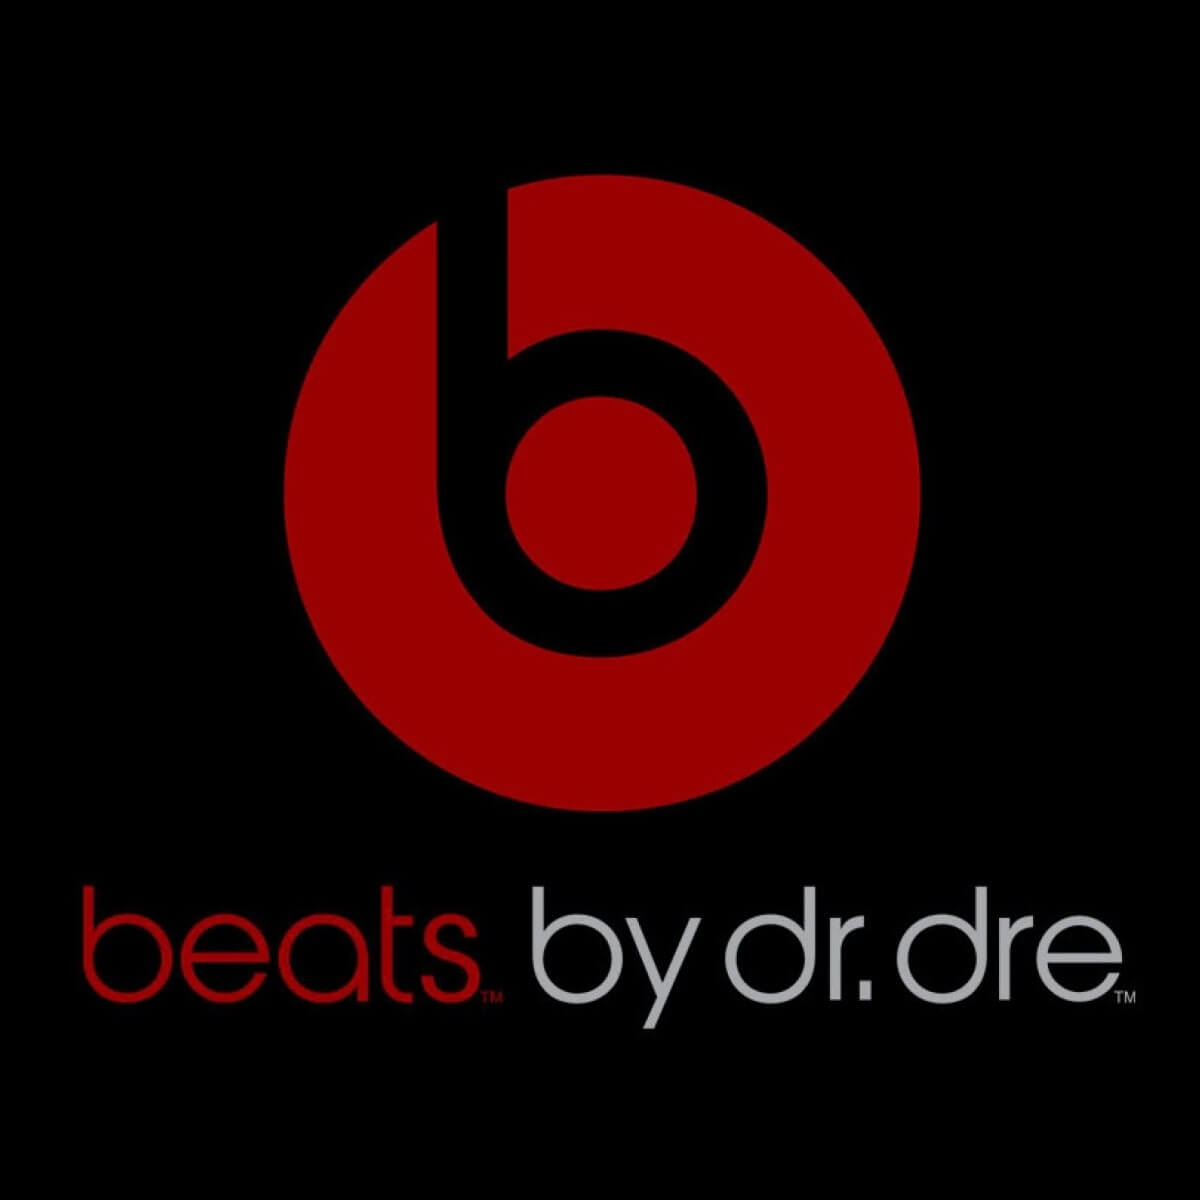 Beats speakers deals - Beats by Dre logo